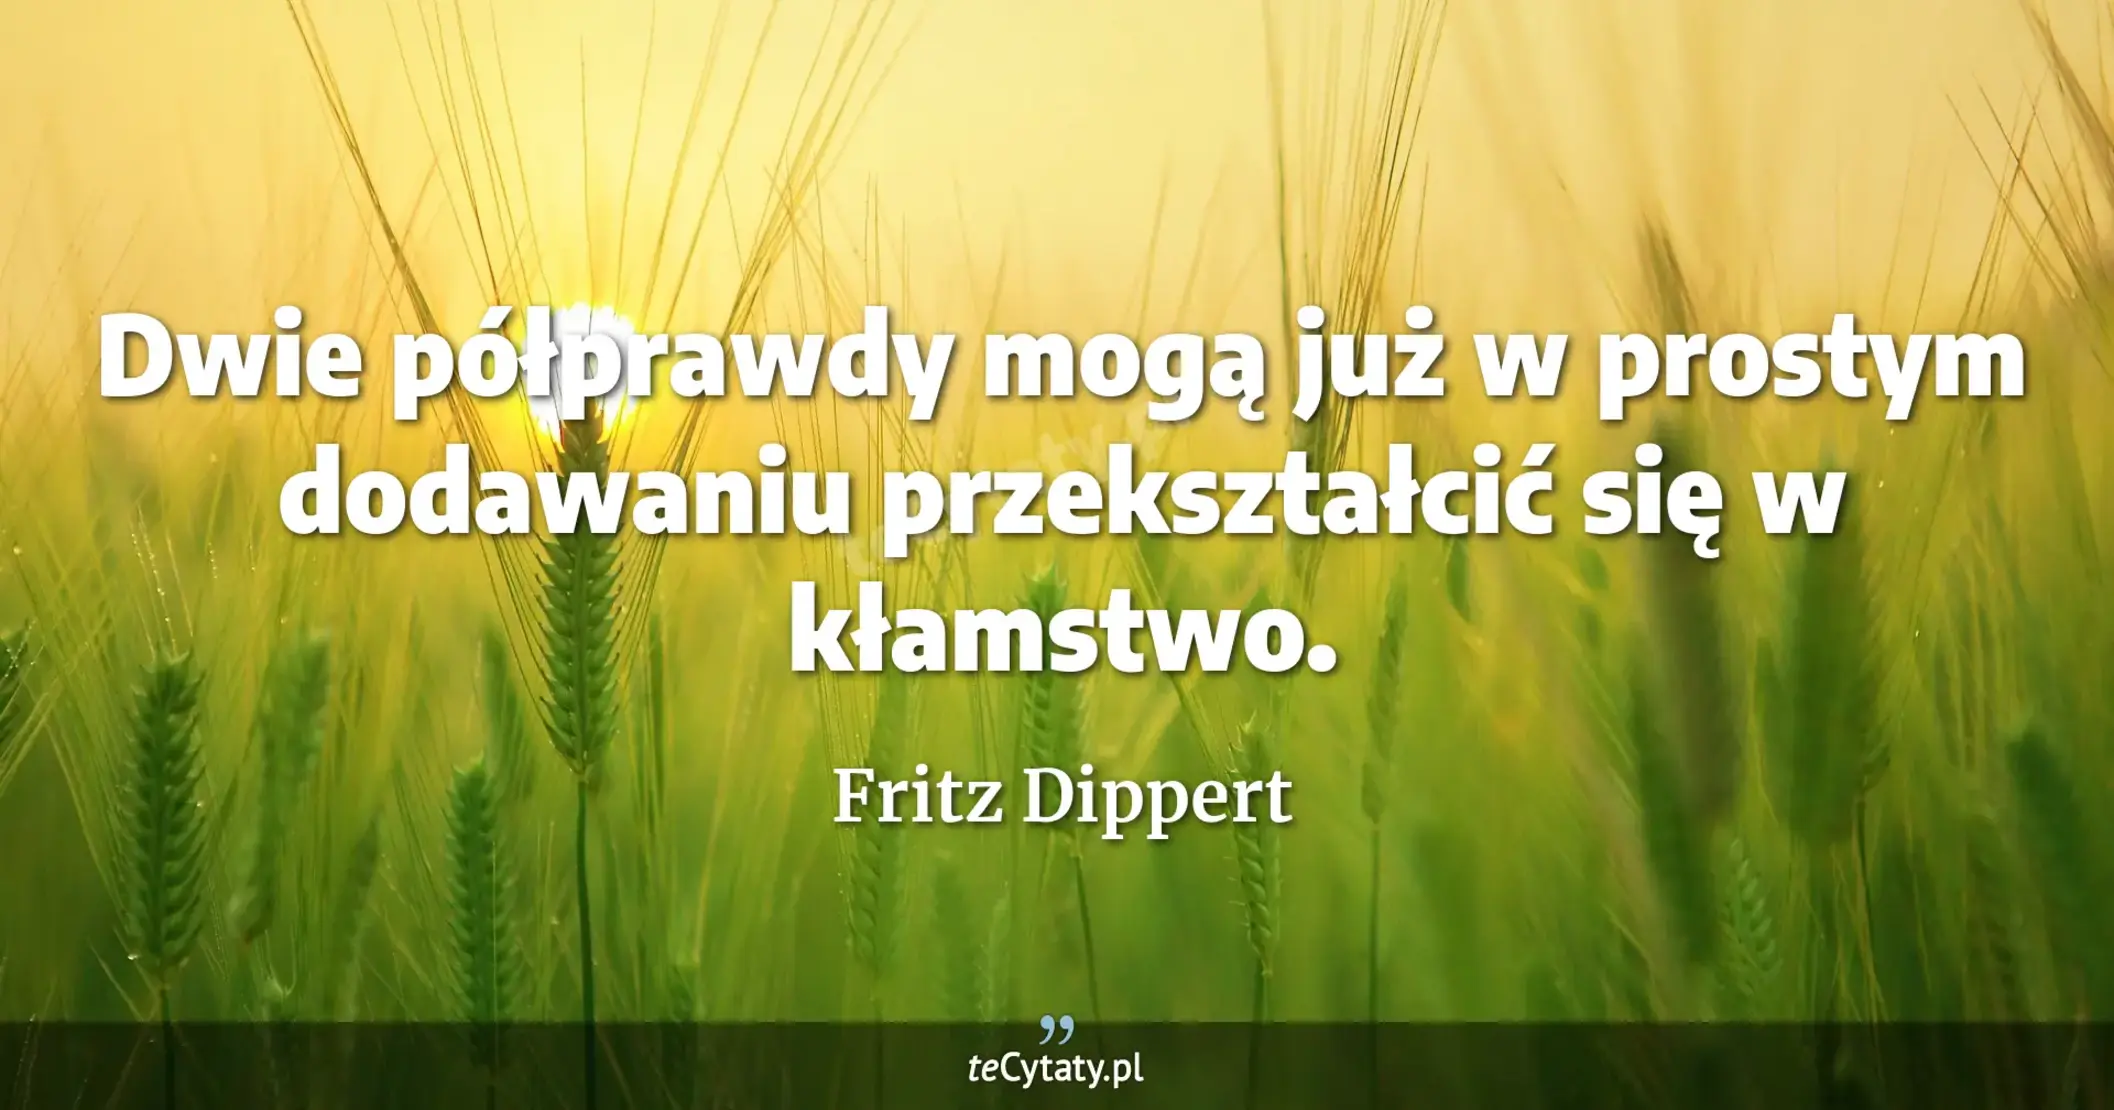 Dwie półprawdy mogą już w prostym dodawaniu przekształcić się w kłamstwo. - Fritz Dippert